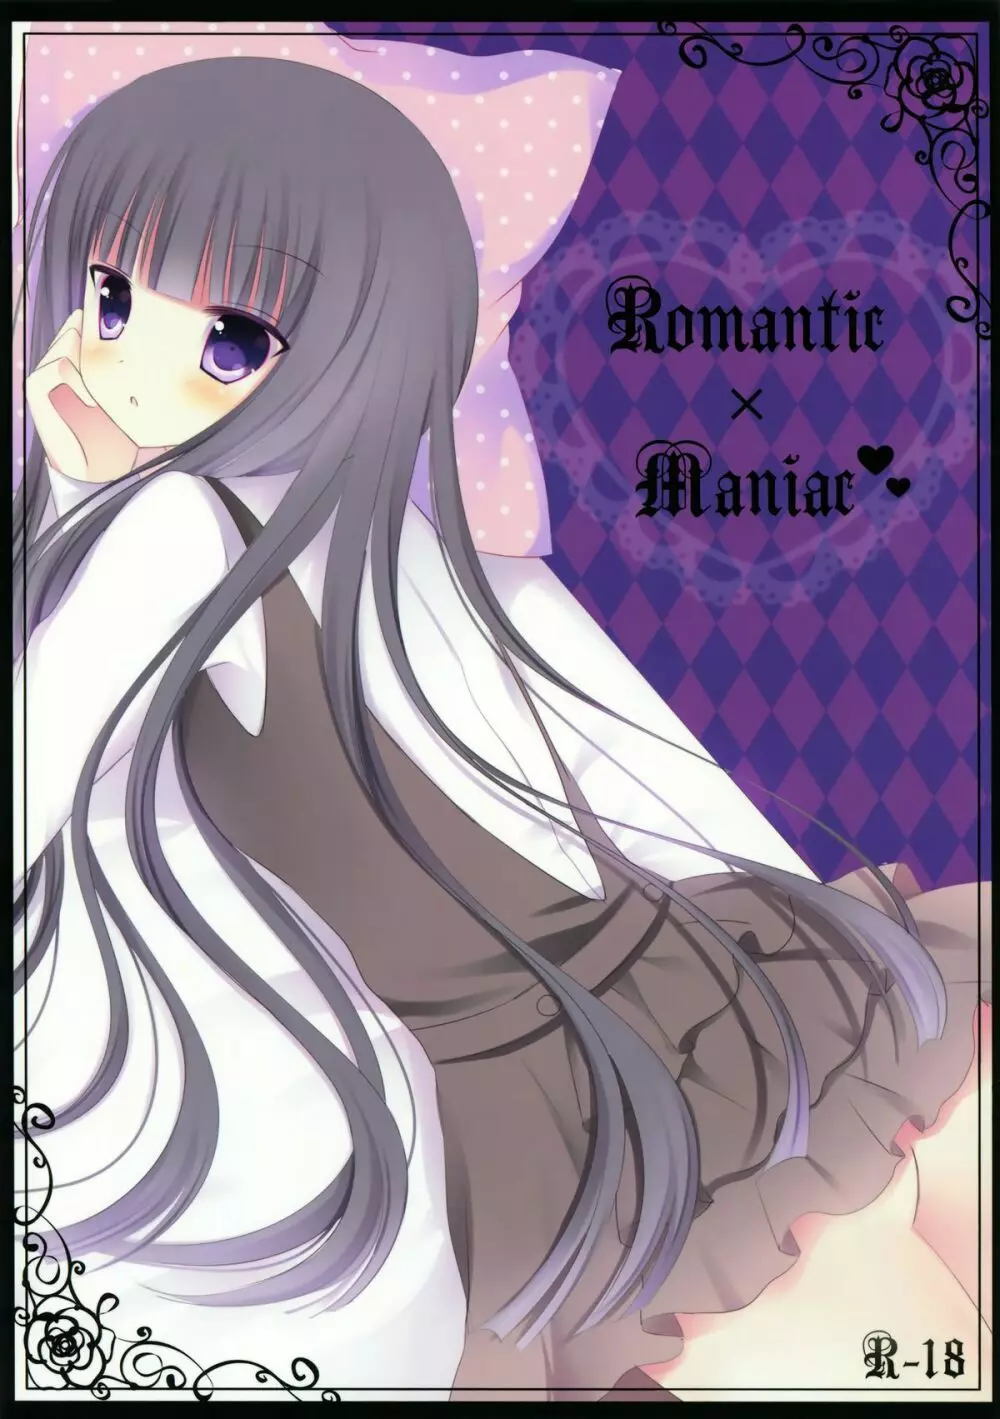 Romantic×maniac